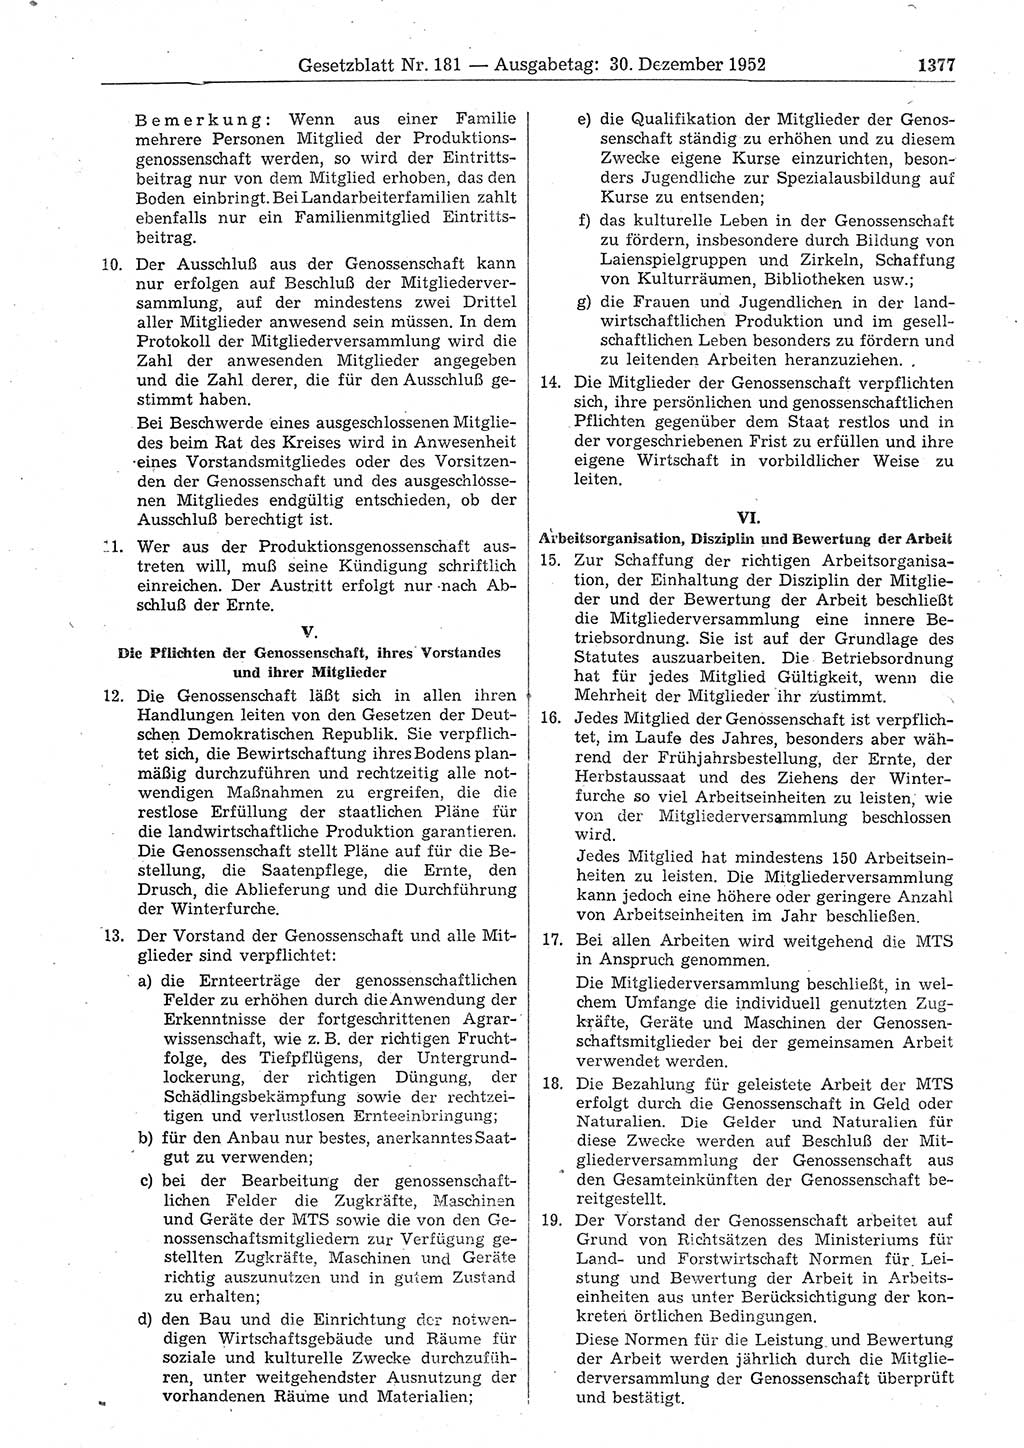 Gesetzblatt (GBl.) der Deutschen Demokratischen Republik (DDR) 1952, Seite 1377 (GBl. DDR 1952, S. 1377)